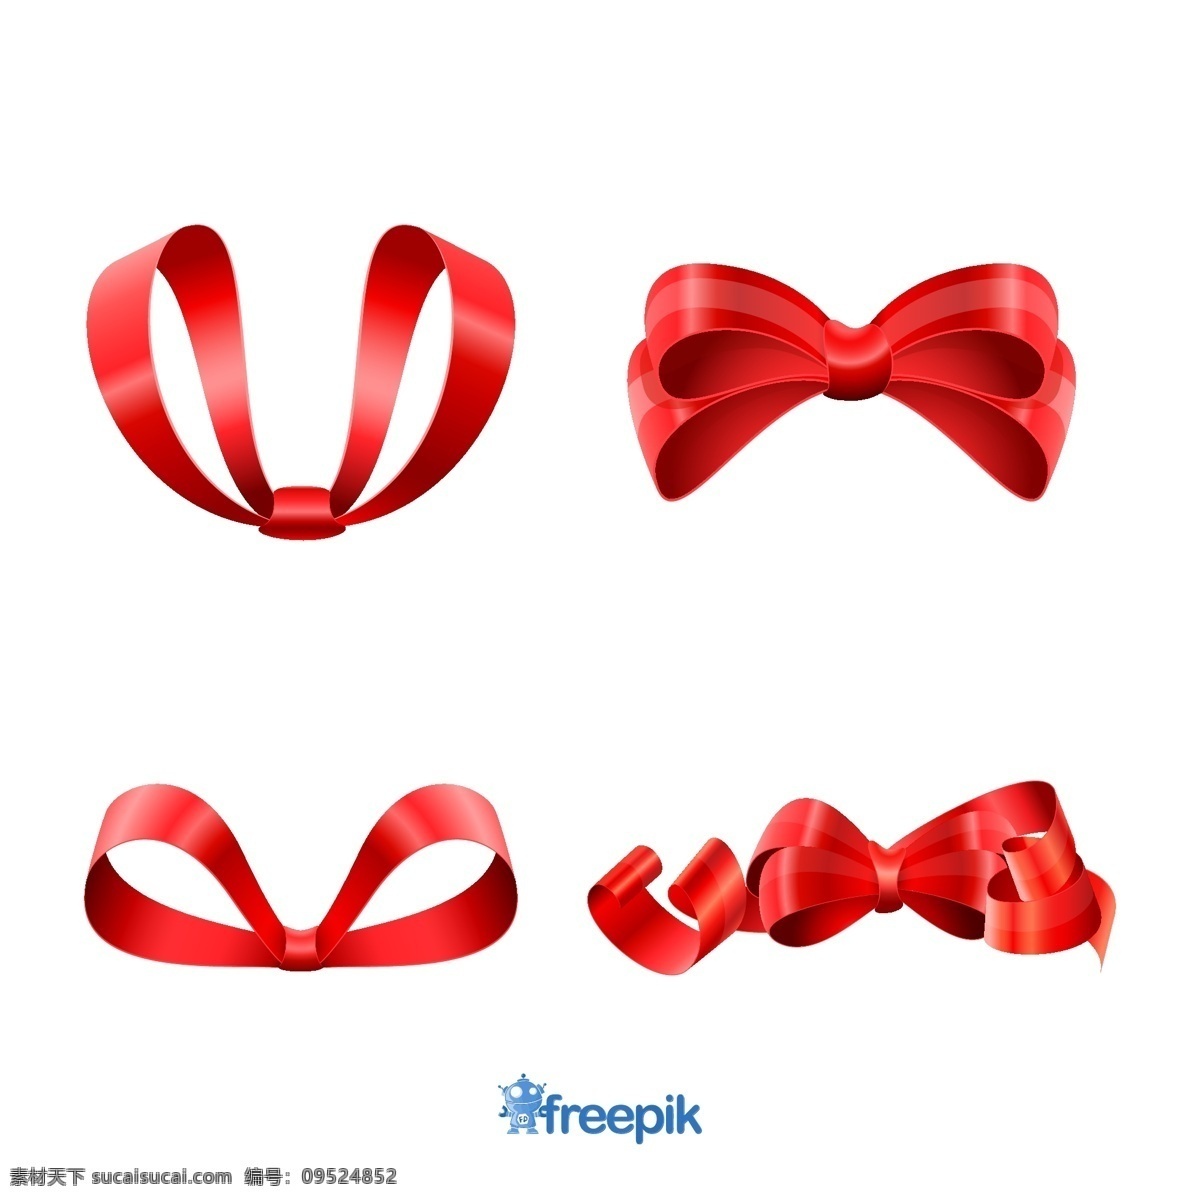 圣诞红丝带 丝带 圣诞节 销售 装饰品 圣诞 红色 颜色 弓 白色